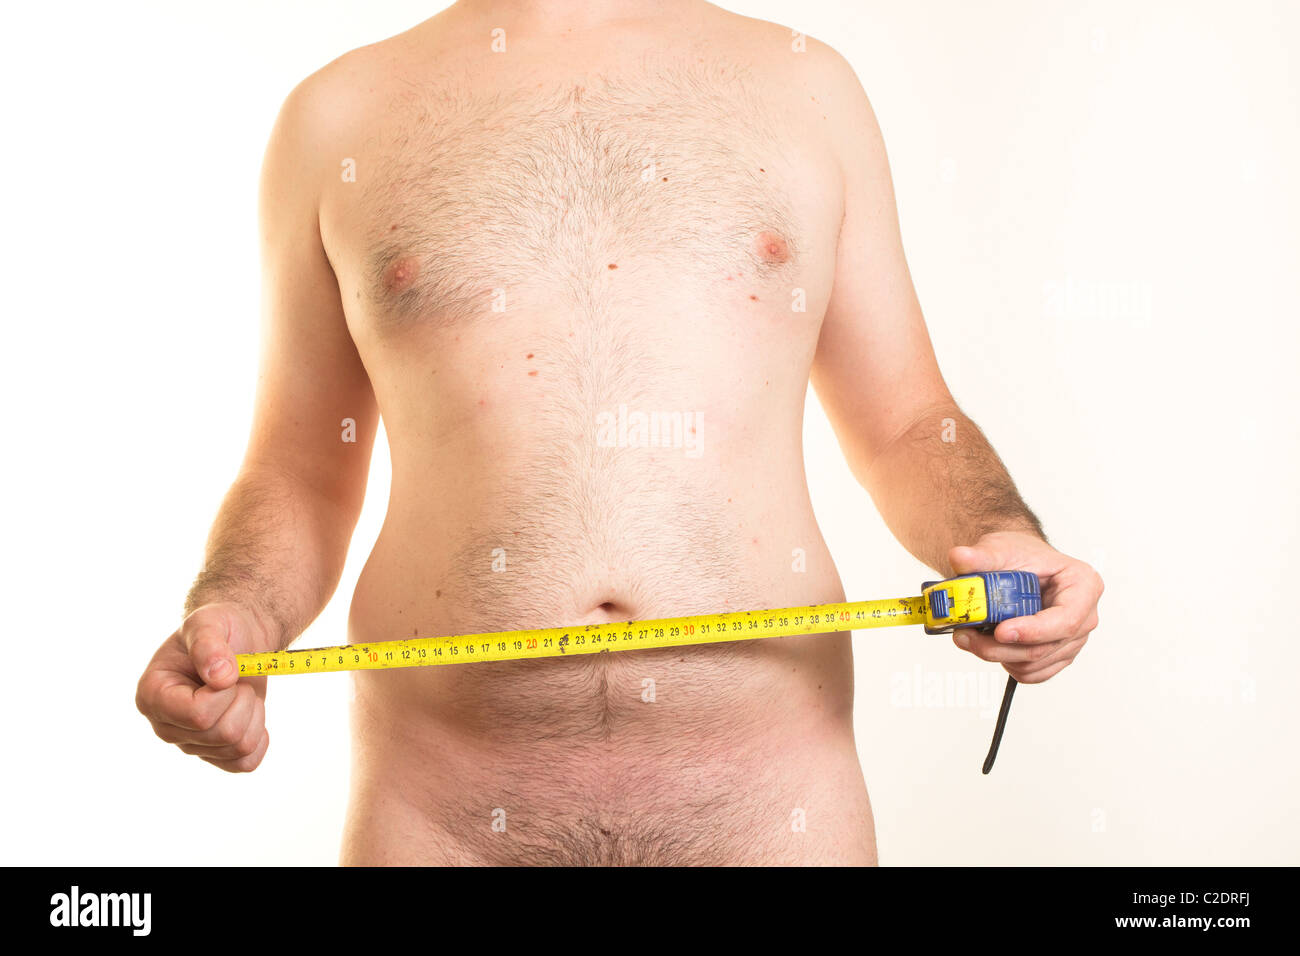 Torse masculin à l'excès de ventre et ruban à mesurer en centimètres Banque D'Images